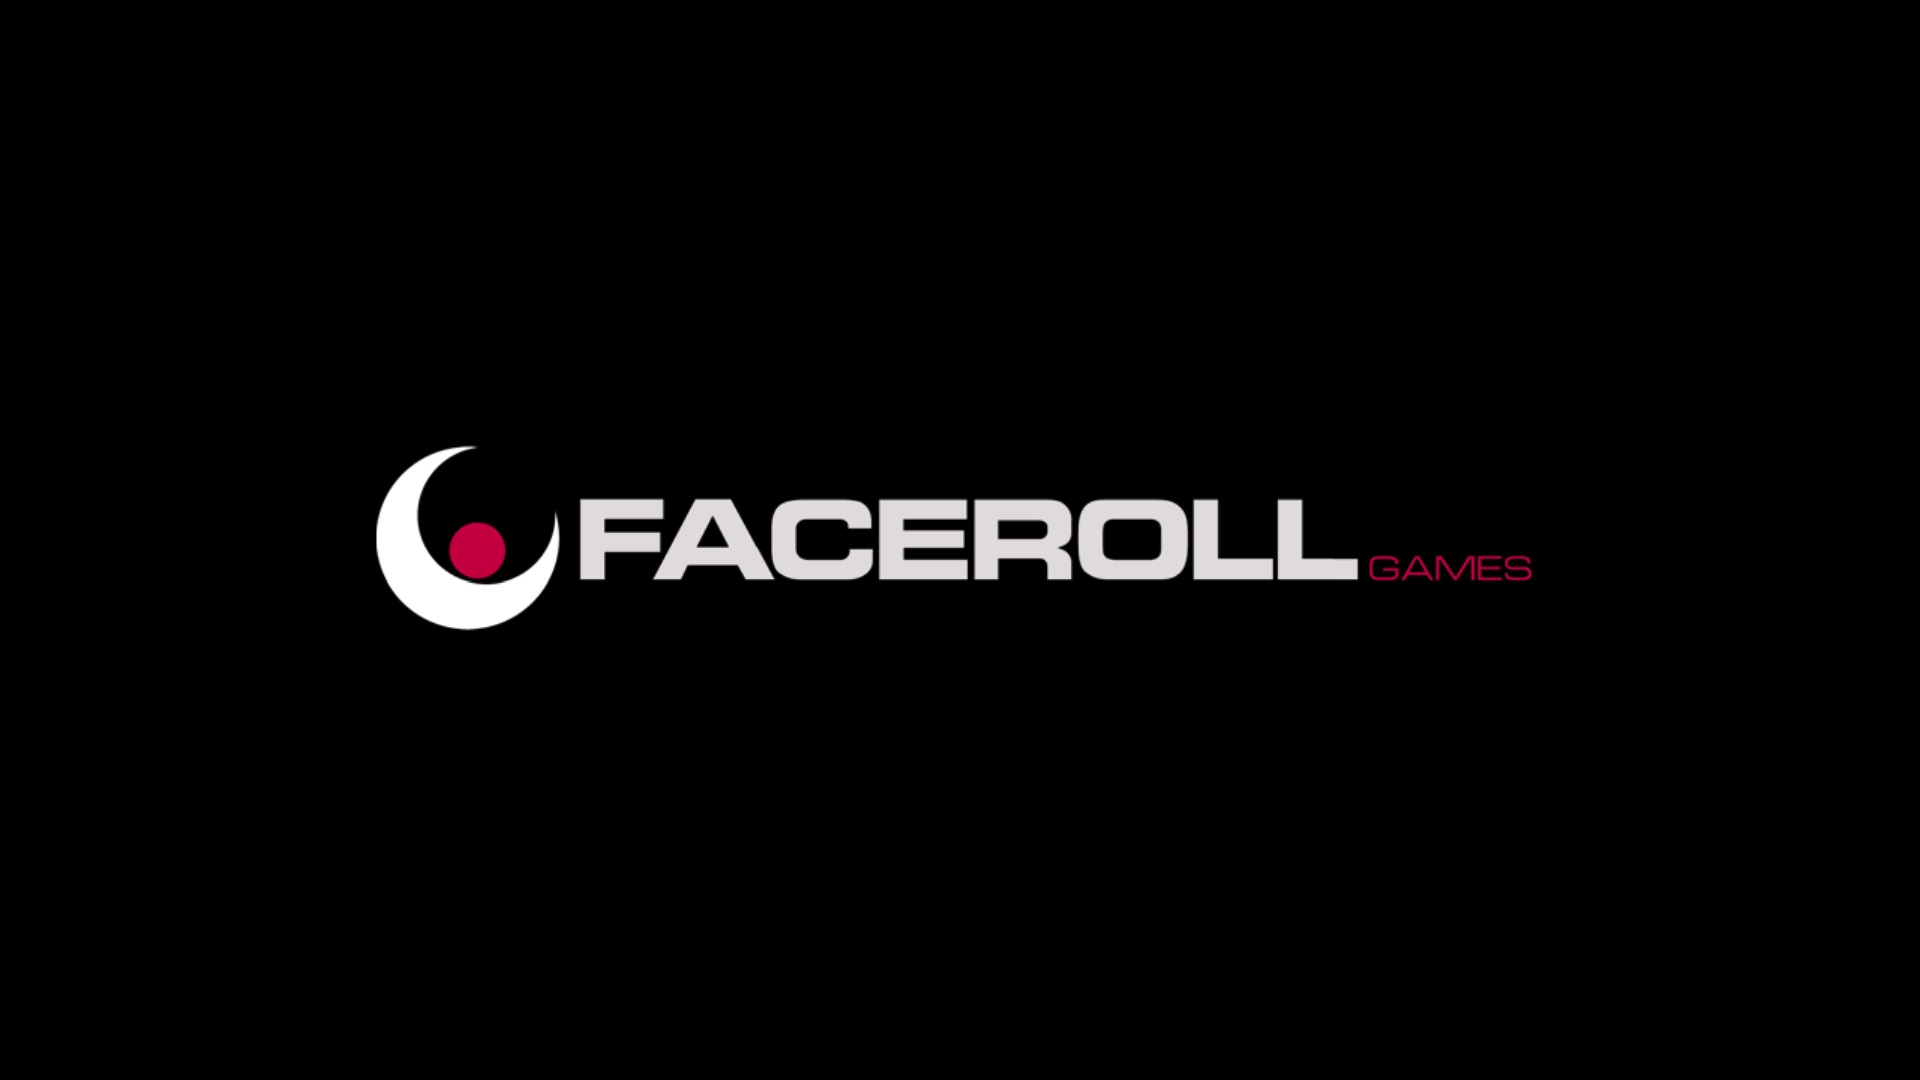 Faceroll Games